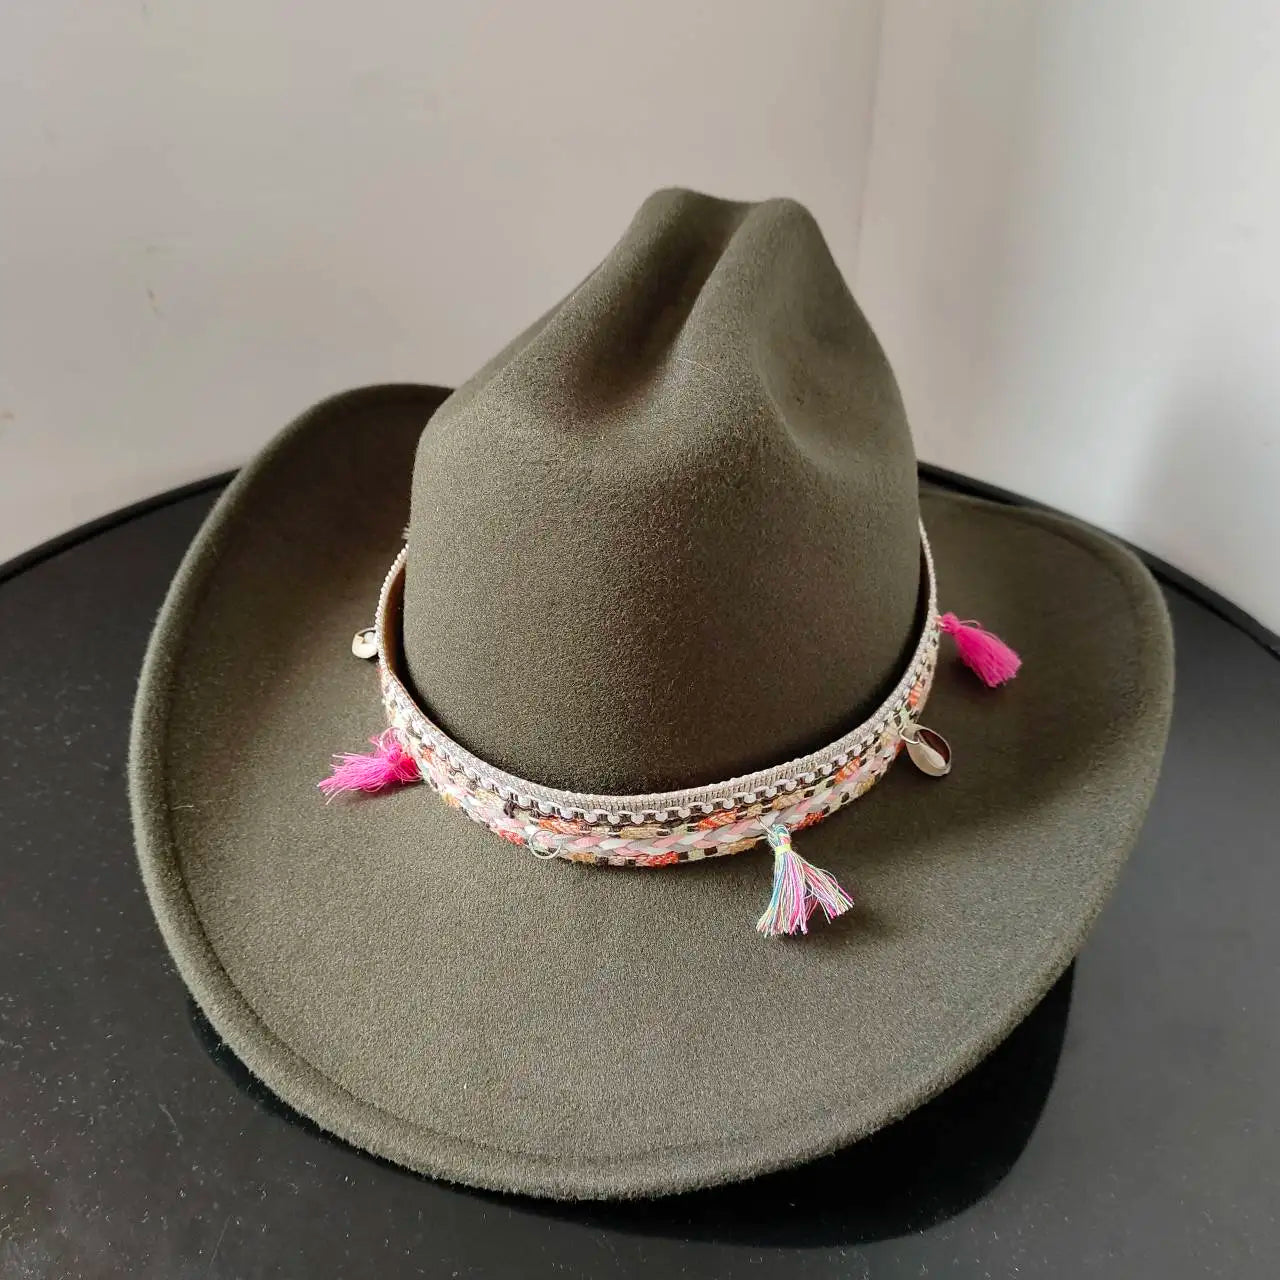 Chapeau Cowboy - CactusCraze - La Maison du Chapeau